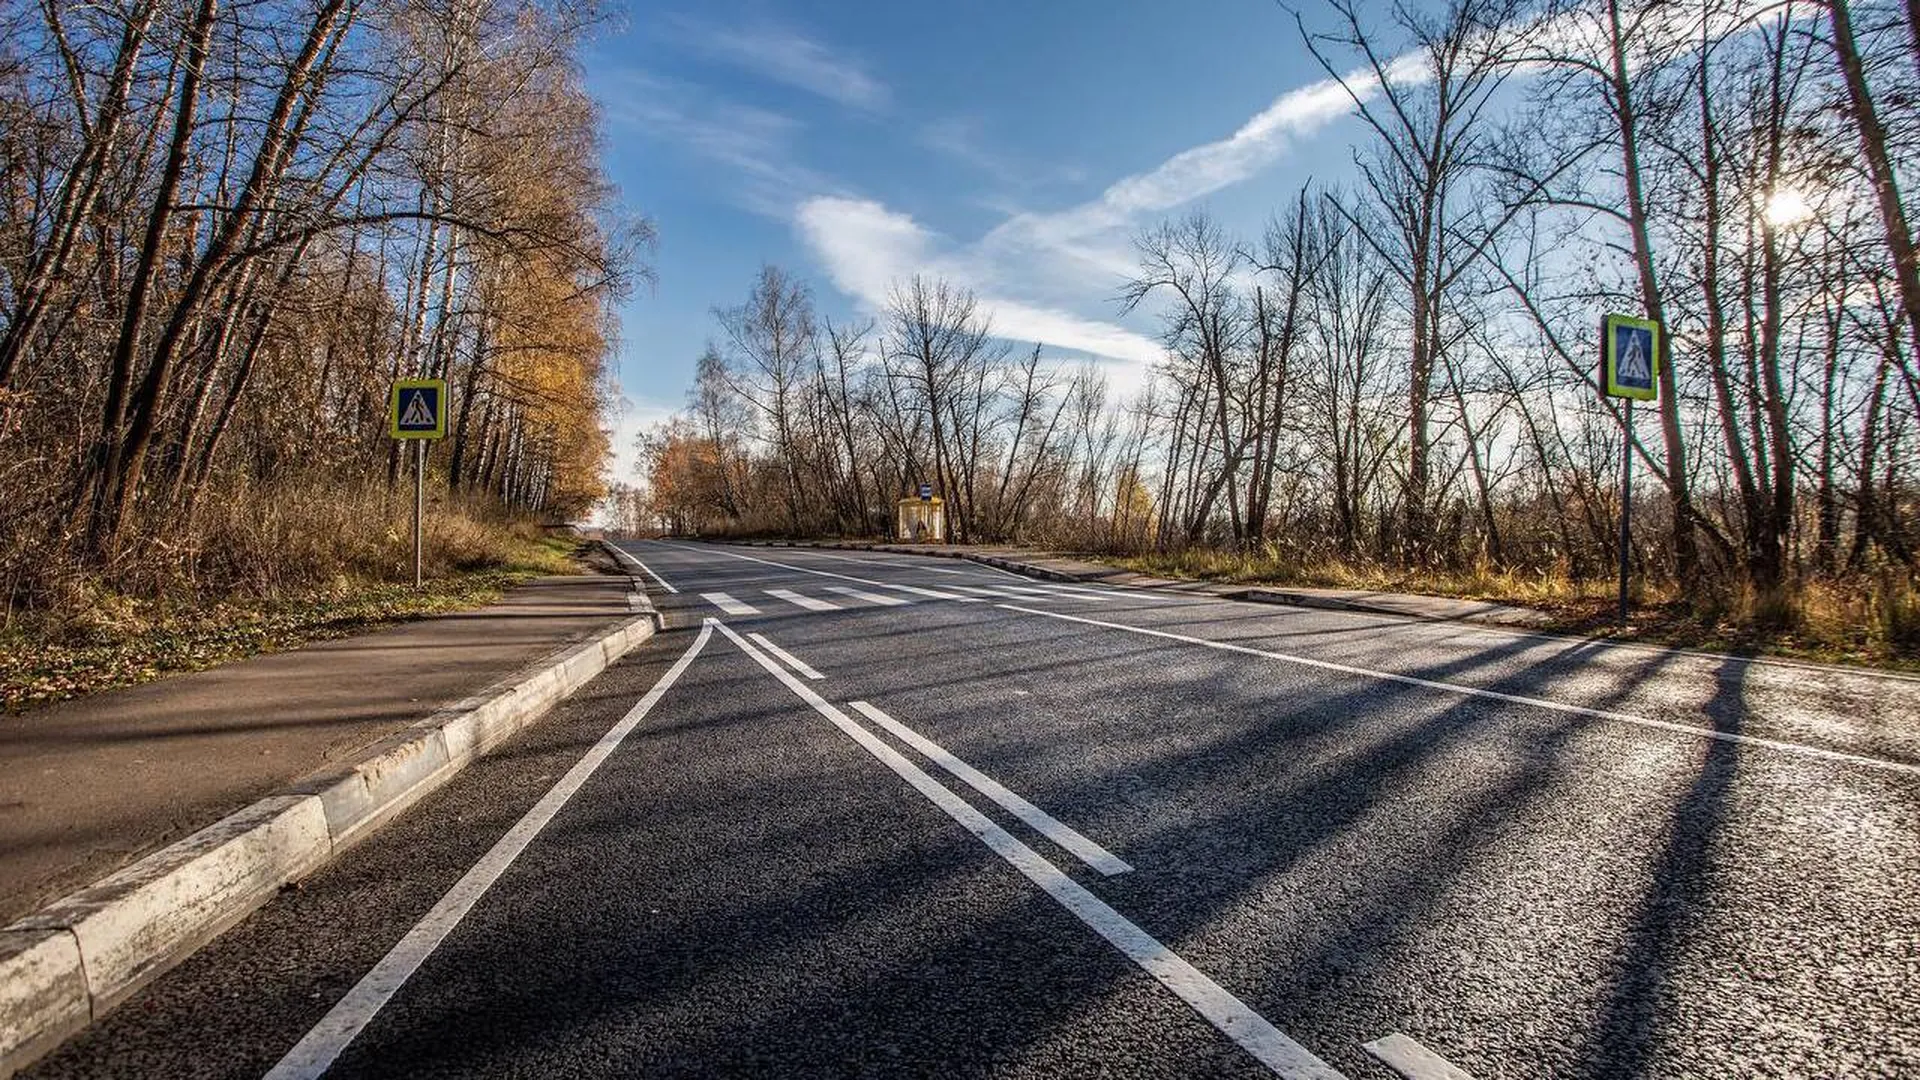 Около 900 километров дорожного покрытия отремонтировали в Подмосковье за год в рамках нацпроекта